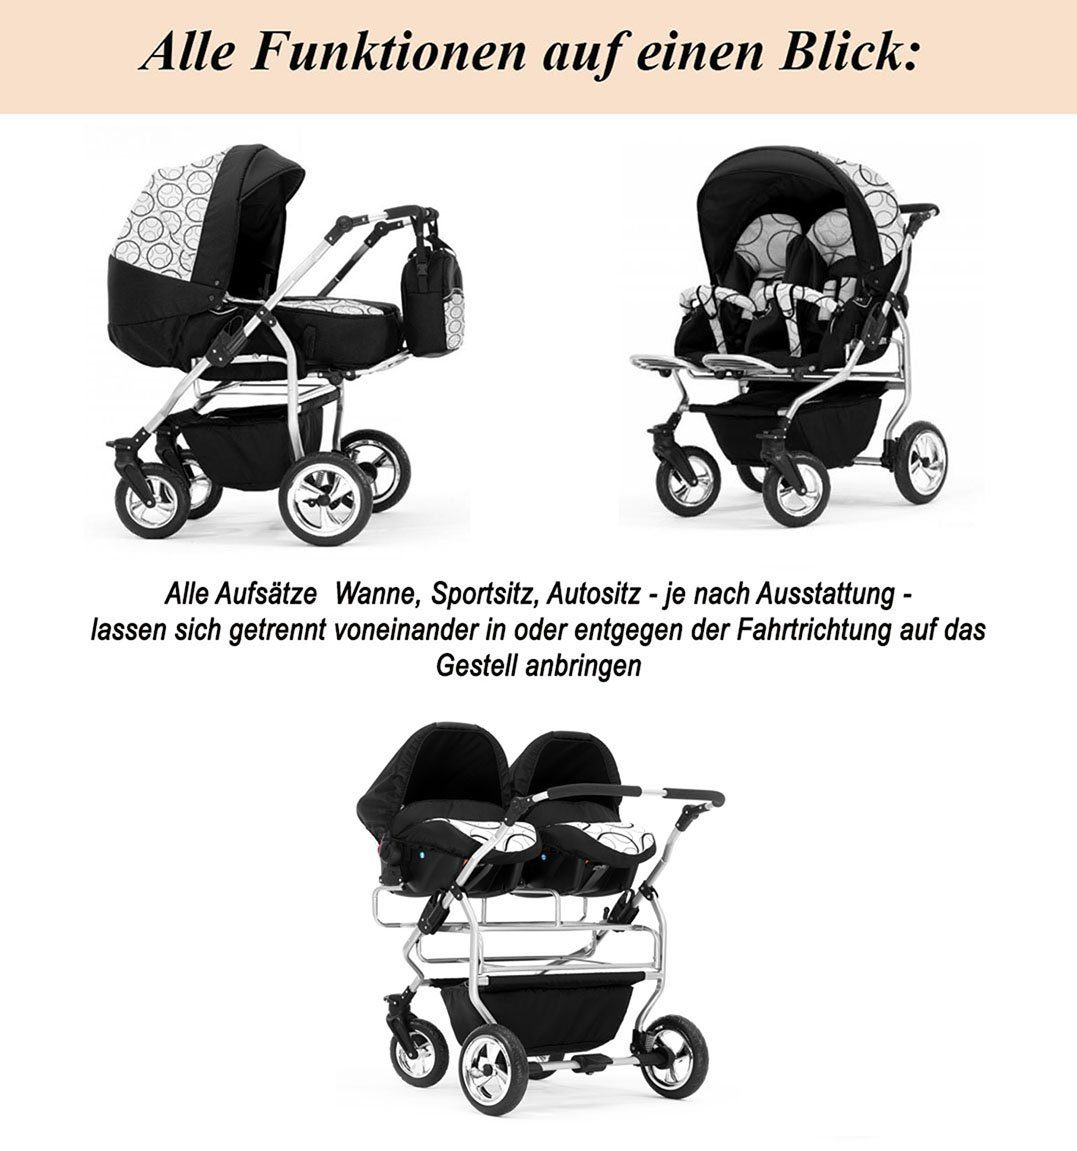 Elcar Zwillings-Kombikinderwagen Zwillingskinderwagen 4 Iso und 14 Teile in von Duo in Autositze 1 inkl. Farben Geburt bis - - Grau-Braun Jahre 20 4 Bases